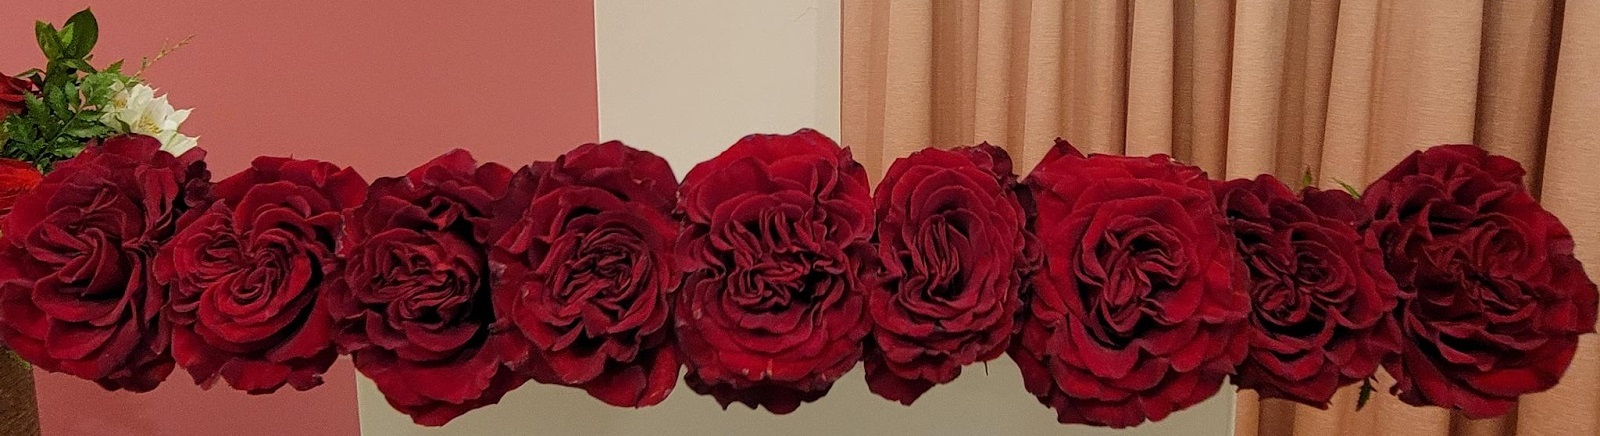 Roses - Image recadrée